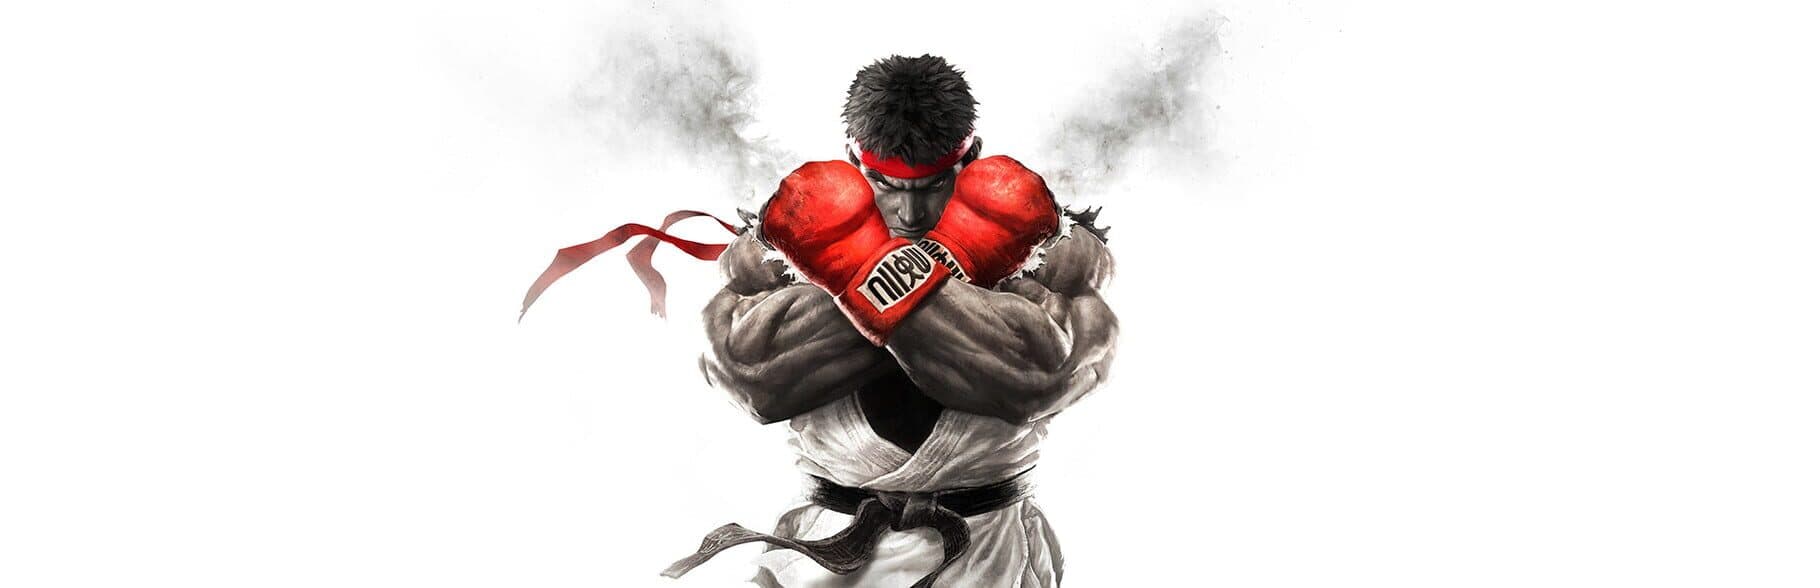 Street Fighter V Image